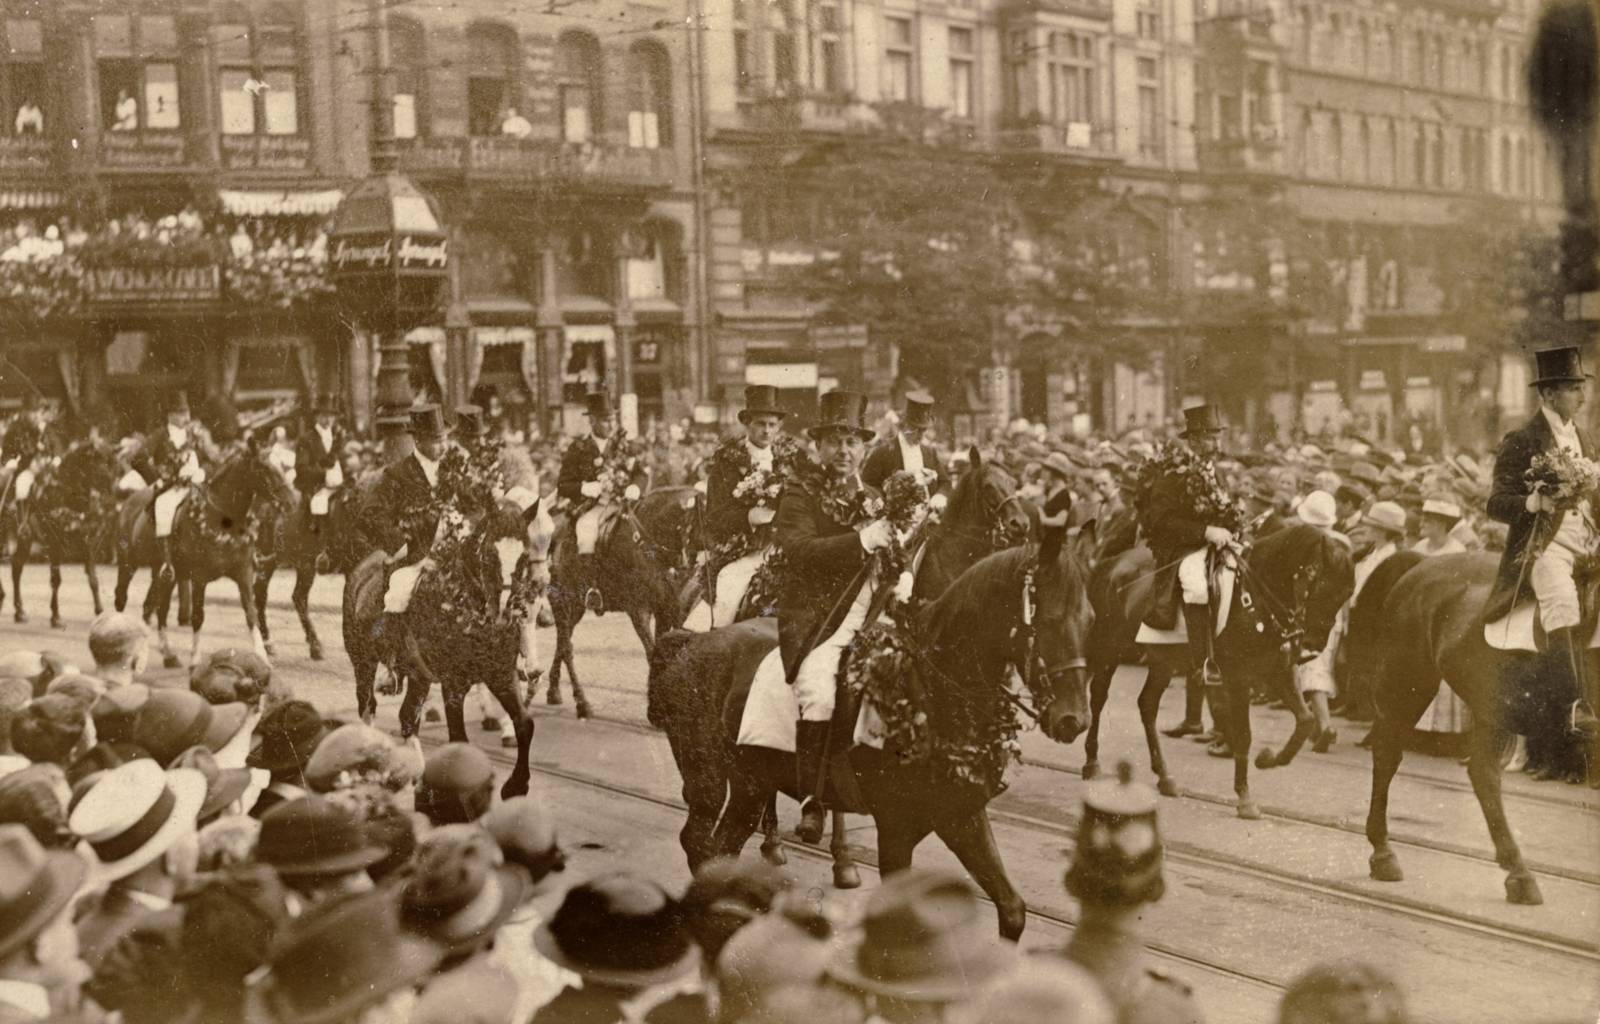 Schützenausmarsch Hannover, Foto, 1925:  Das Bild zeigt Reiter auf geschmückten Pferden, vermutlich am Kröpcke. Die Straße ist gesäumt von einer dichtgedrängten Menschenmenge.